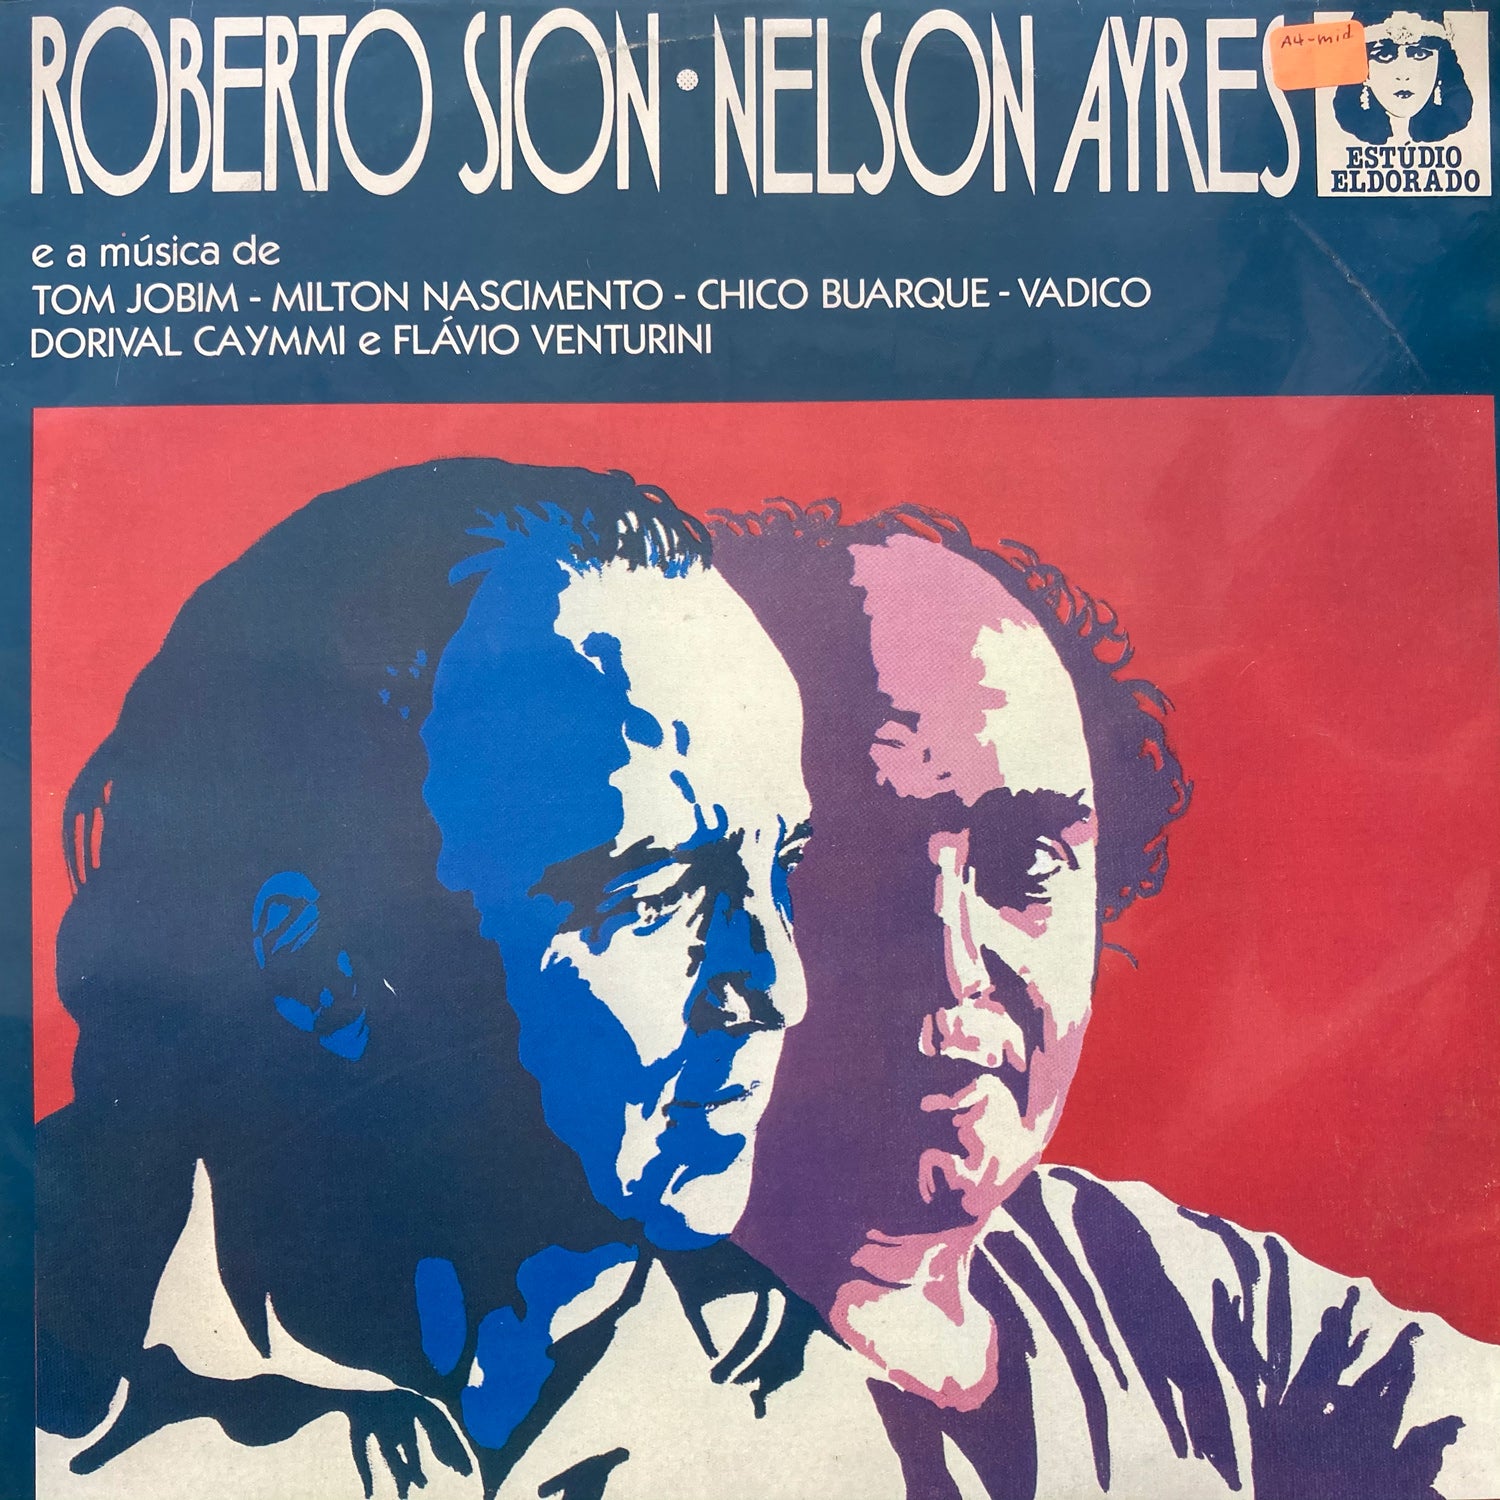 Roberto Sion & Nelson Ayres - e musica de